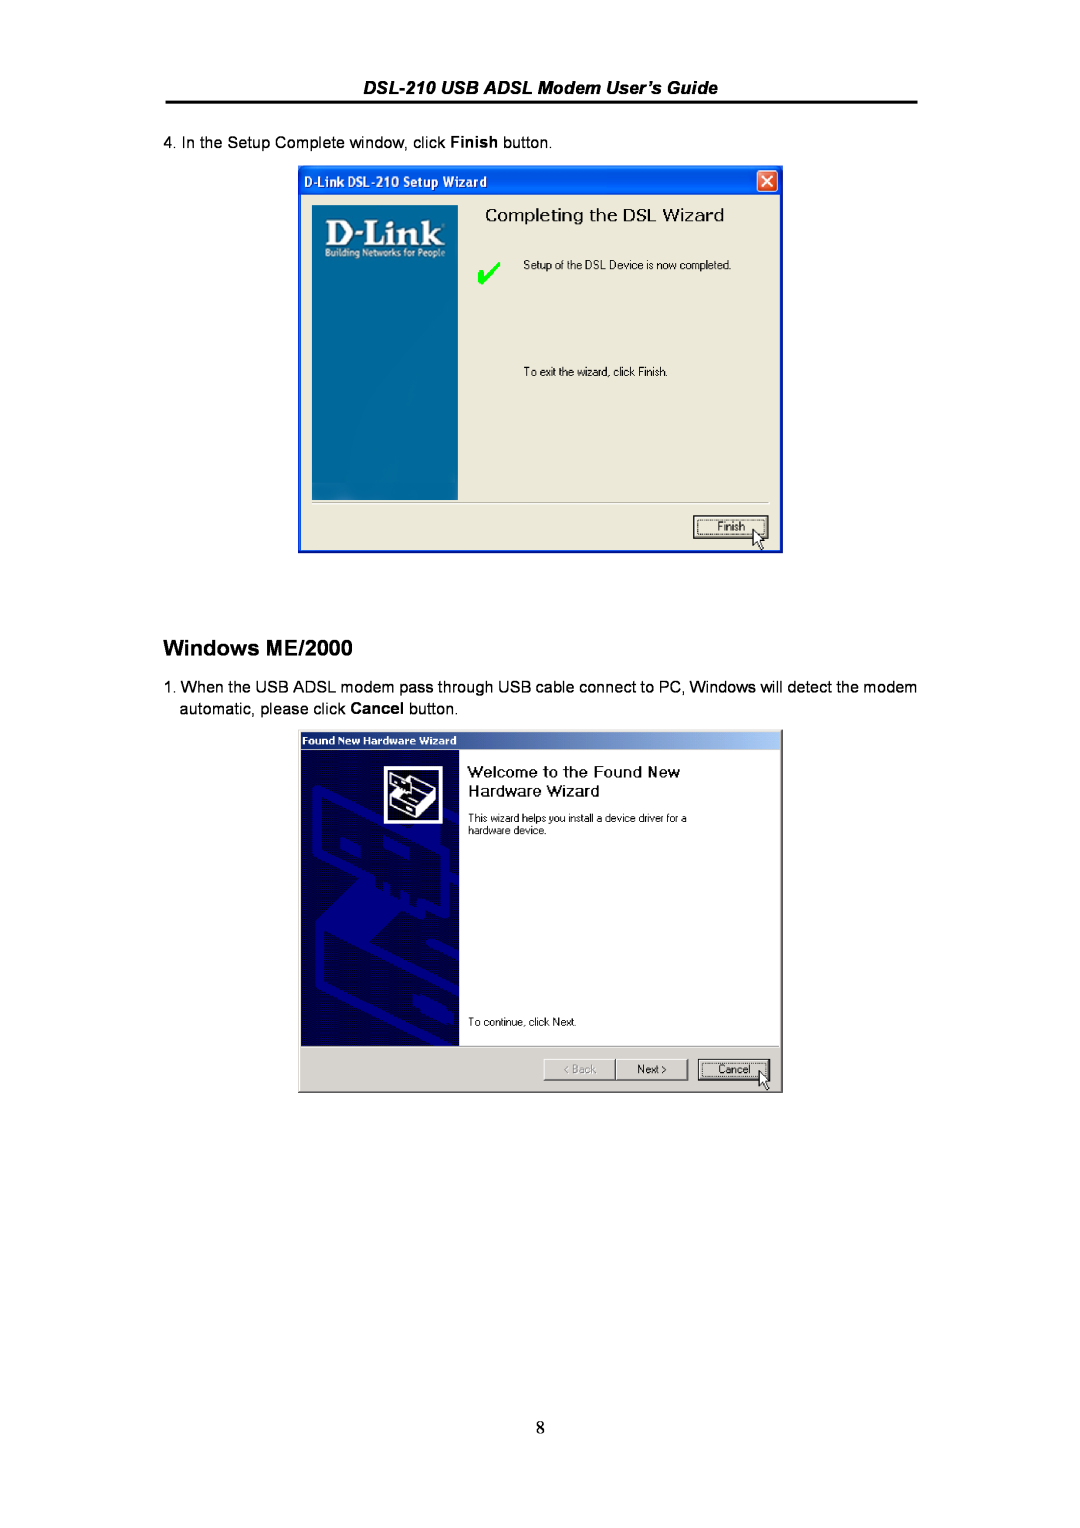 D-Link manual Windows ME/2000, DSL-210 USB ADSL Modem User’s Guide 